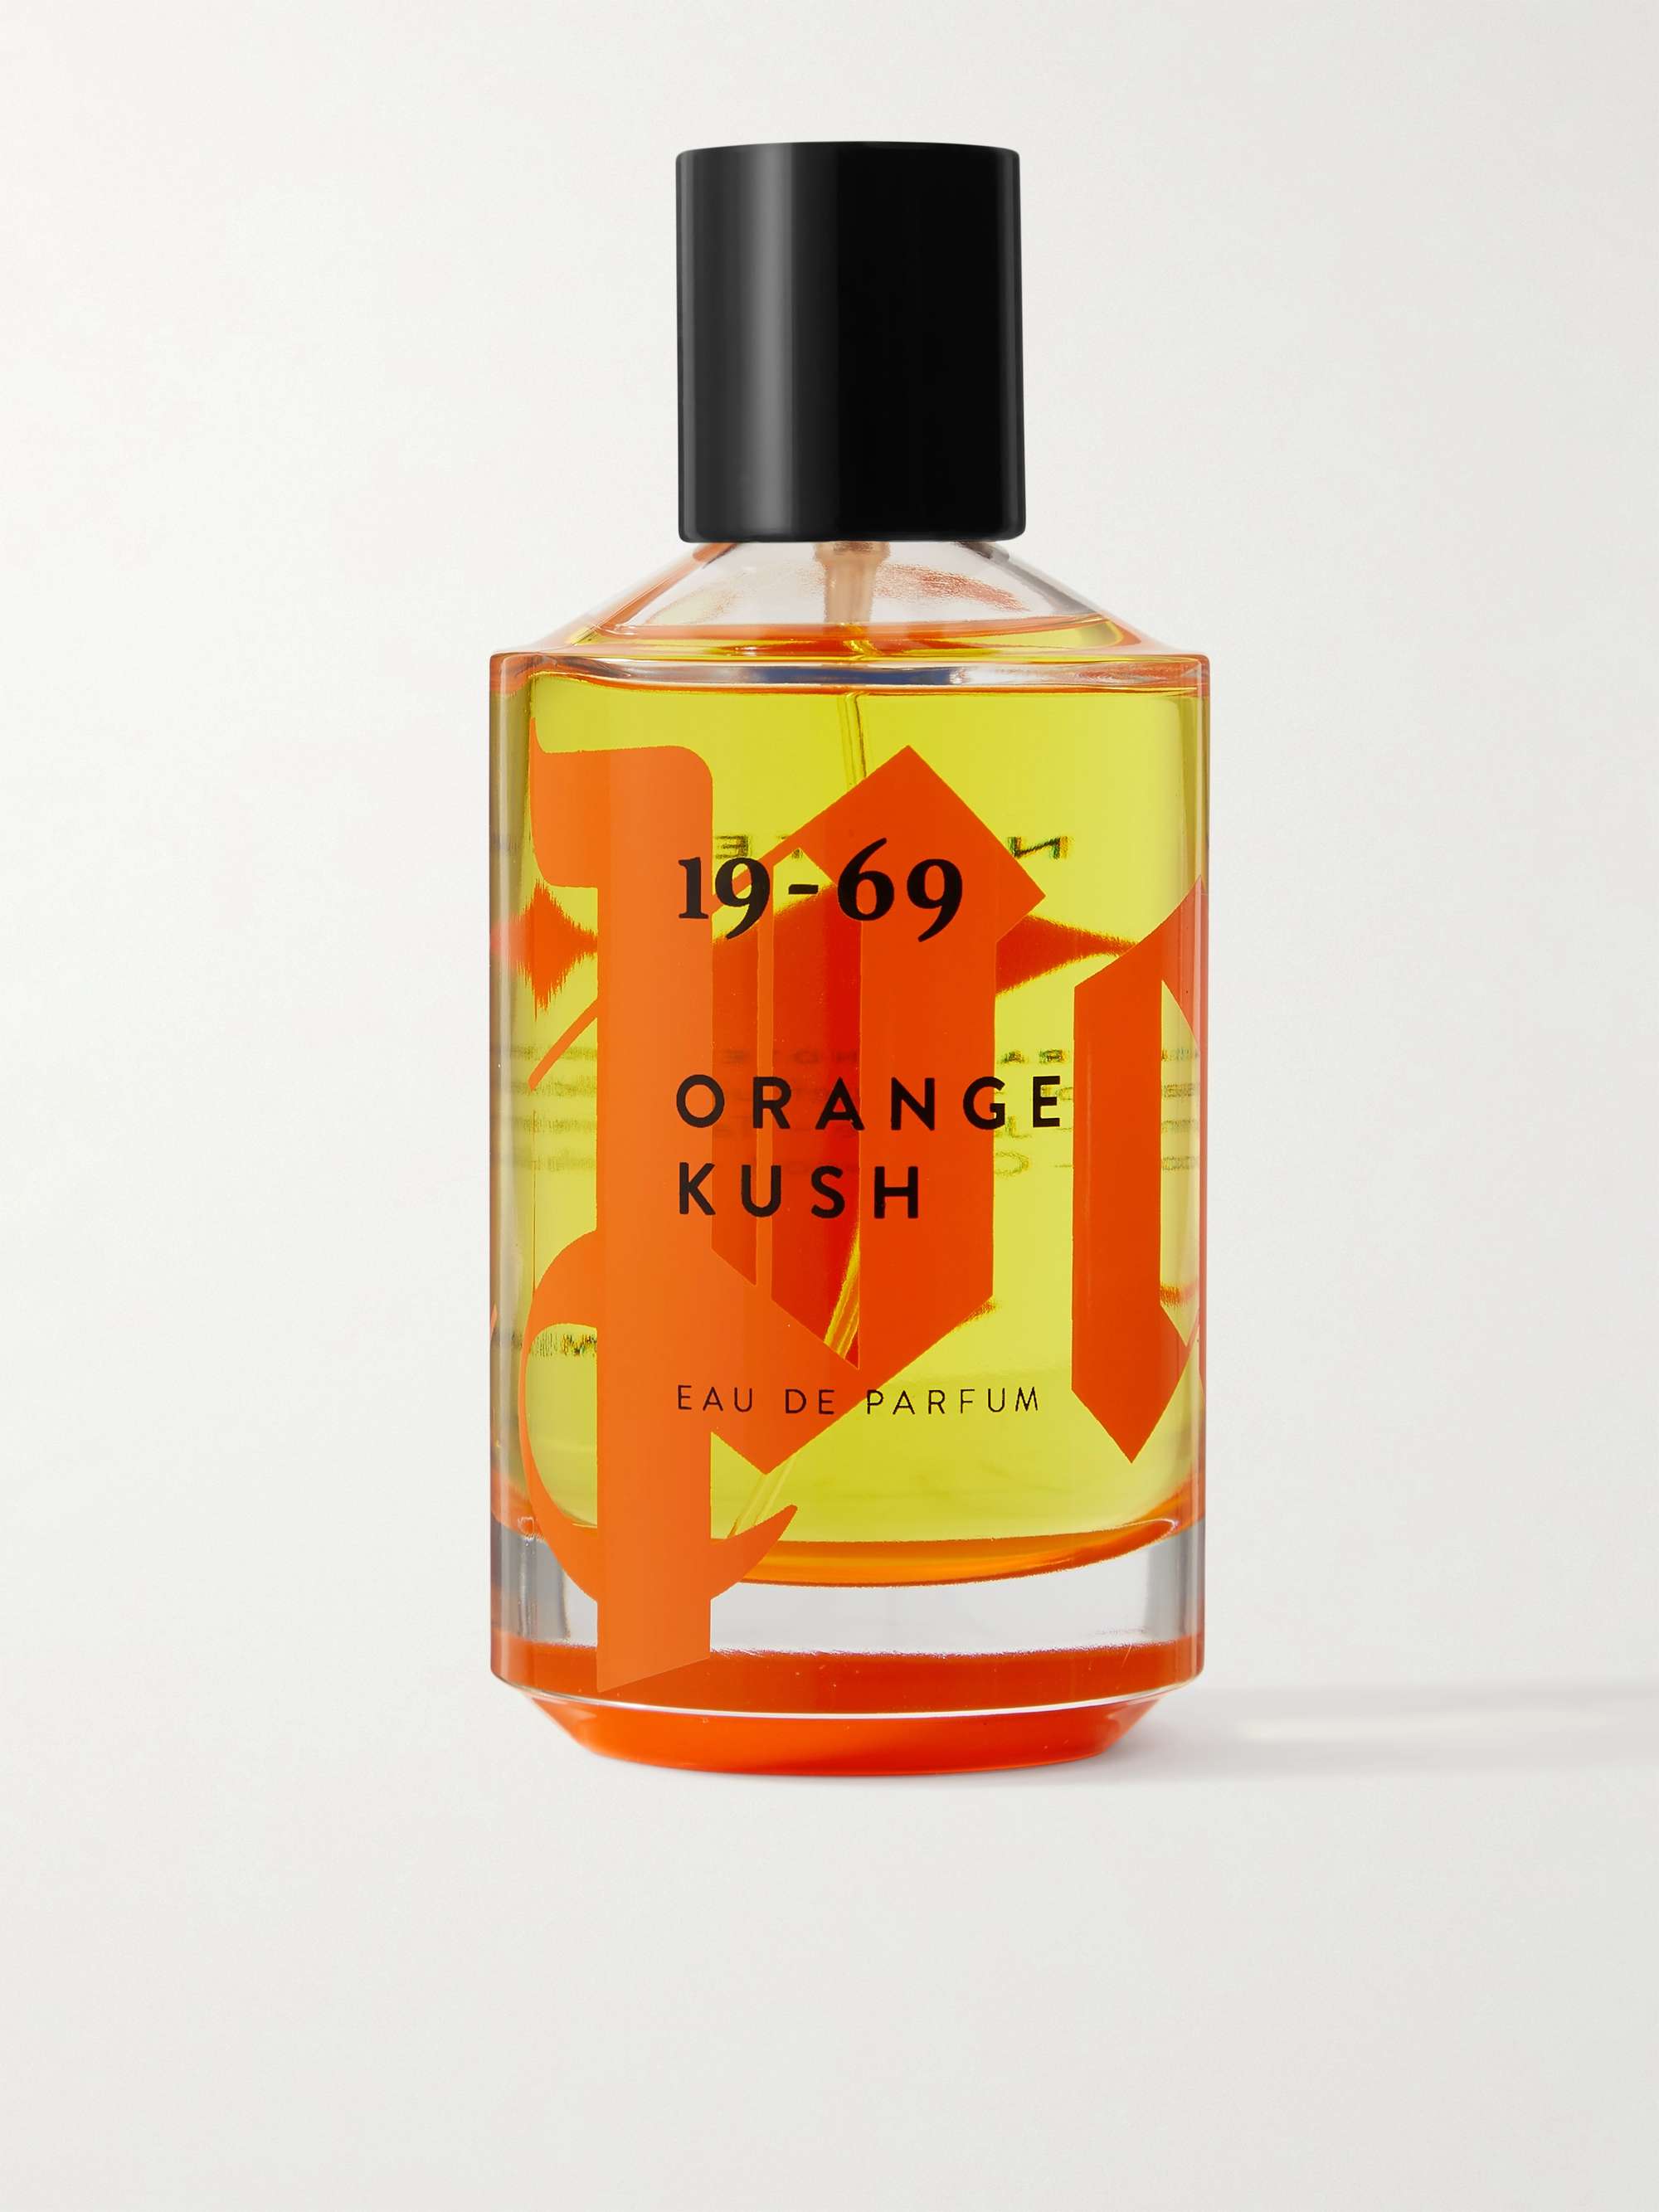 19-69 + Palm Angels Limited Edition Orange Kush Eau de Parfum, 100ml | MR  PORTER